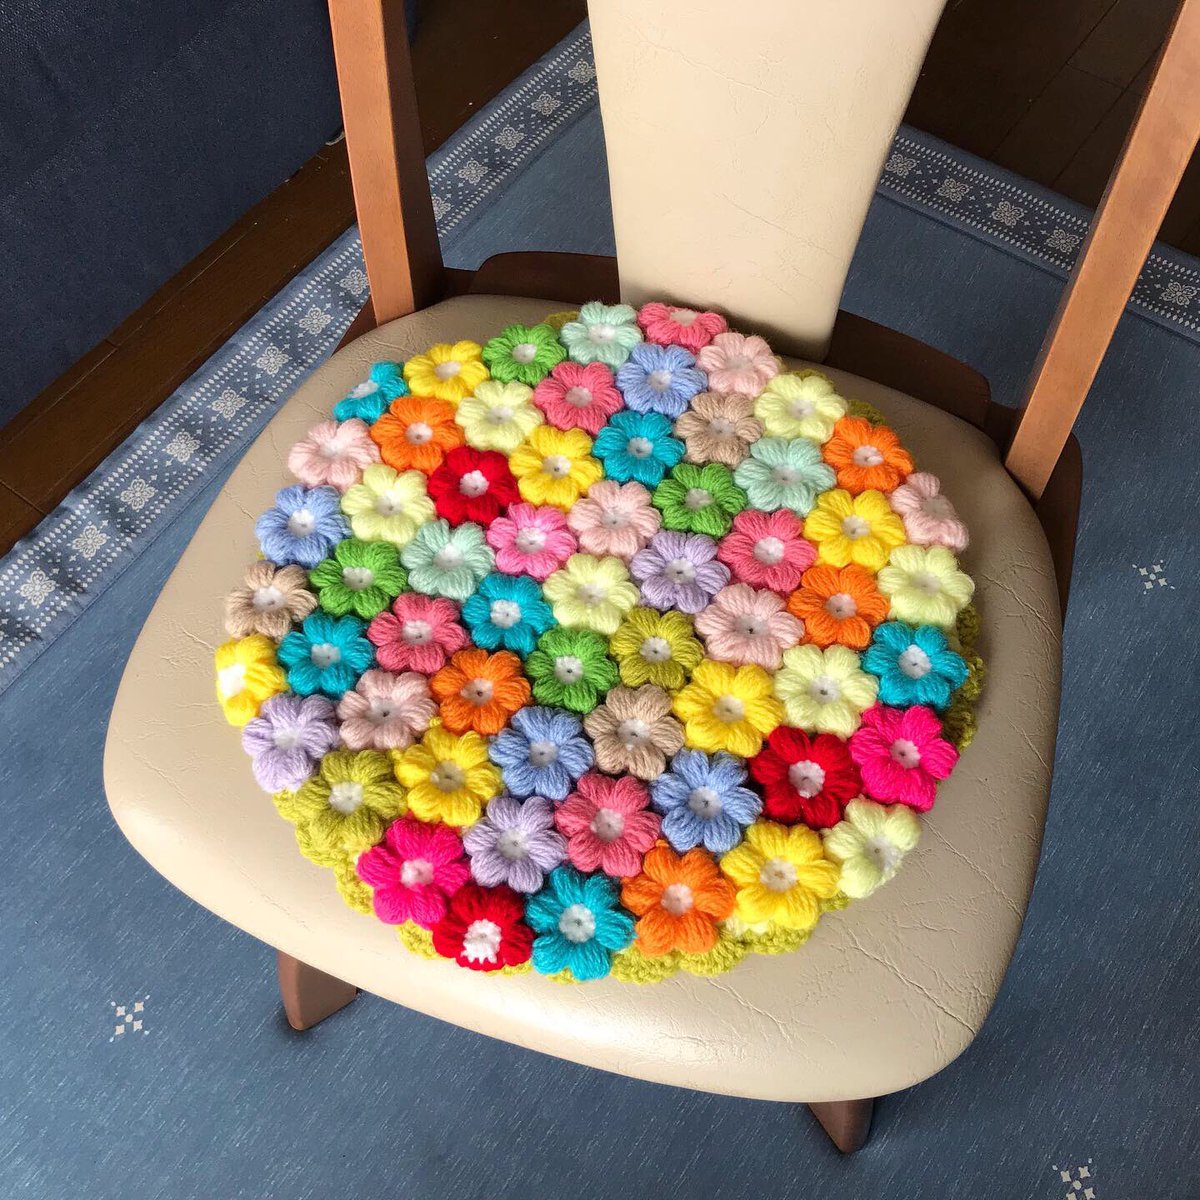 Buri Natti モリーの花と玉編みで リバーシブル出来る円座を作りました 重ねたことにより 厚みがでて 座り心地も良いです モリーの花 玉編み 円座 座布団 編み物 かぎ針編み リバーシブル